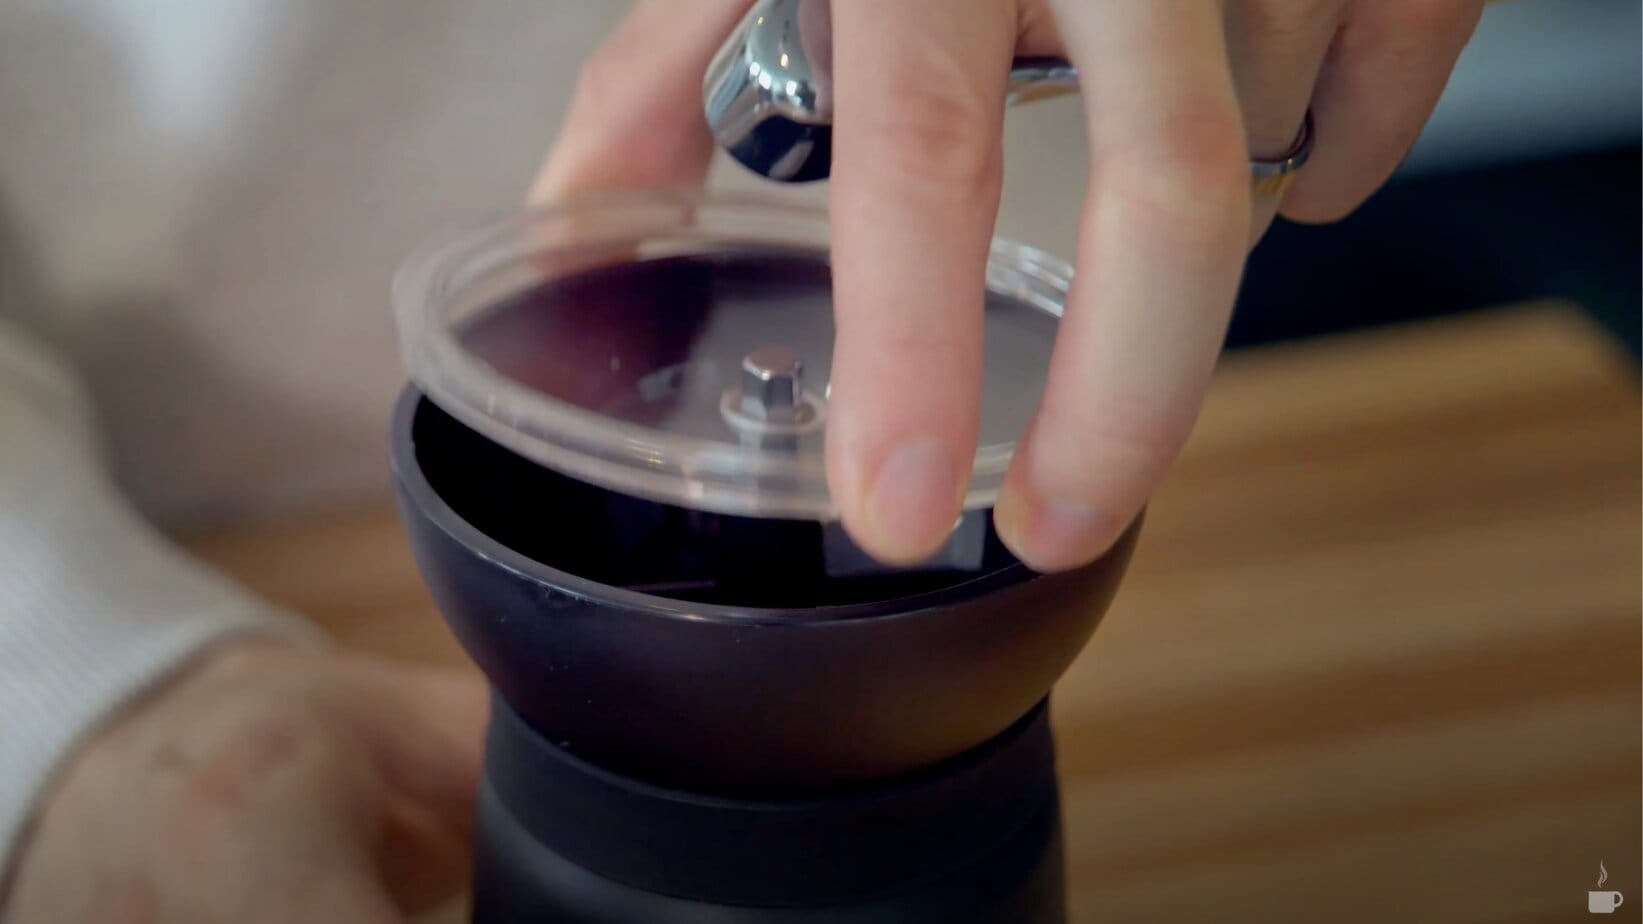 Hario Skerton Pro Coffee Grinder removable lid